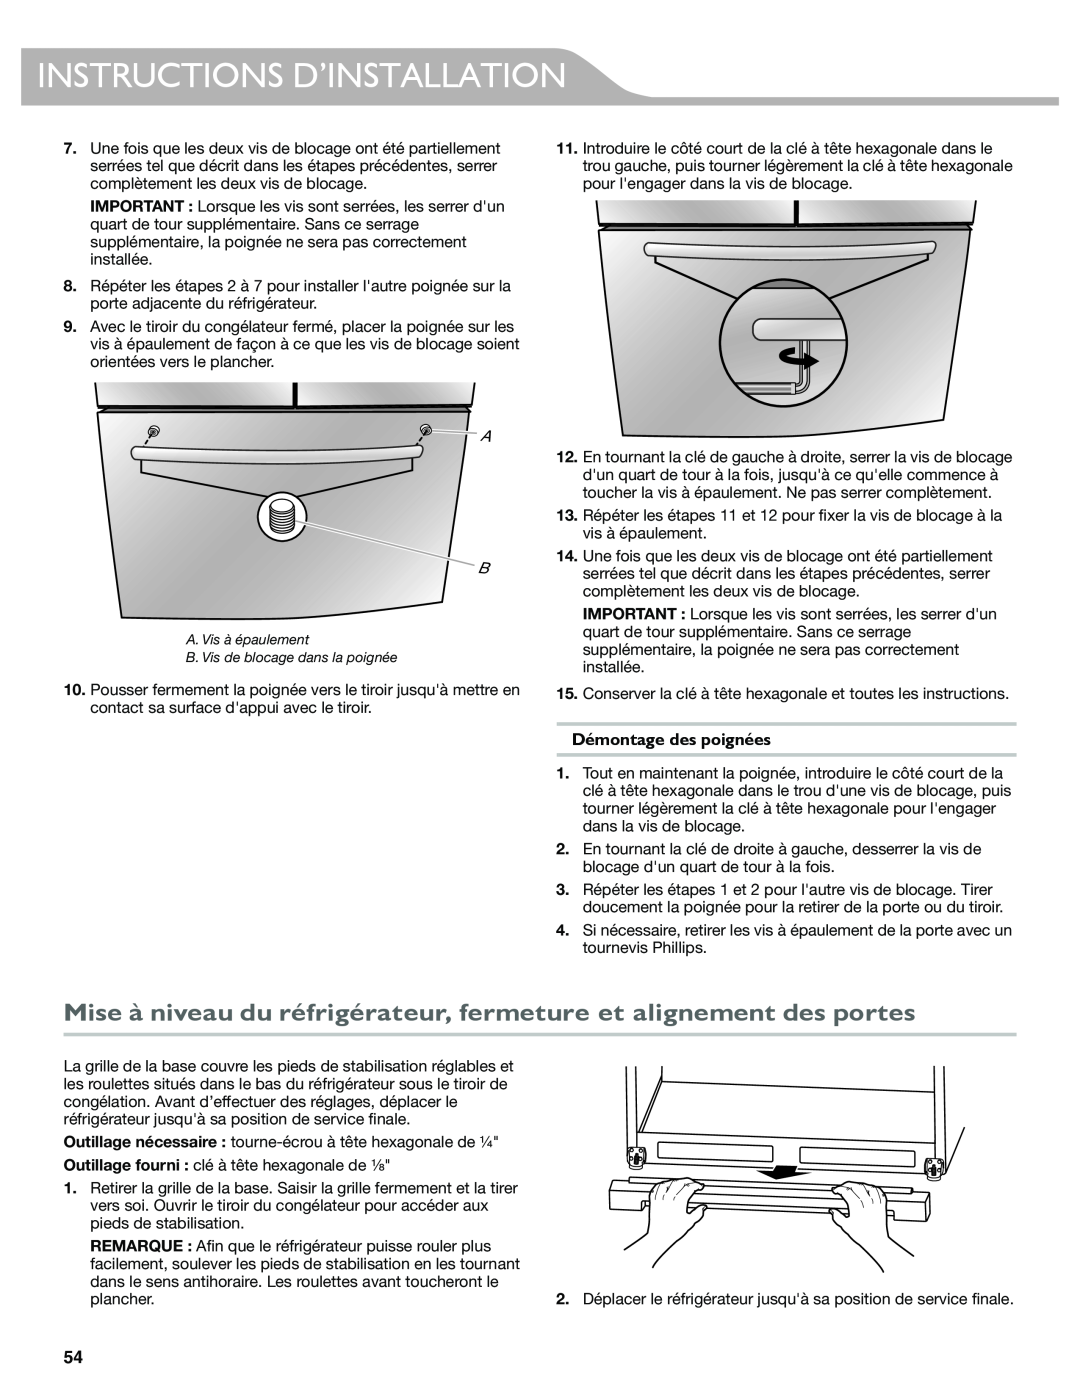 KitchenAid W10417002A manual Mise à niveau du réfrigérateur, fermeture et alignement des portes, Démontage des poignées 